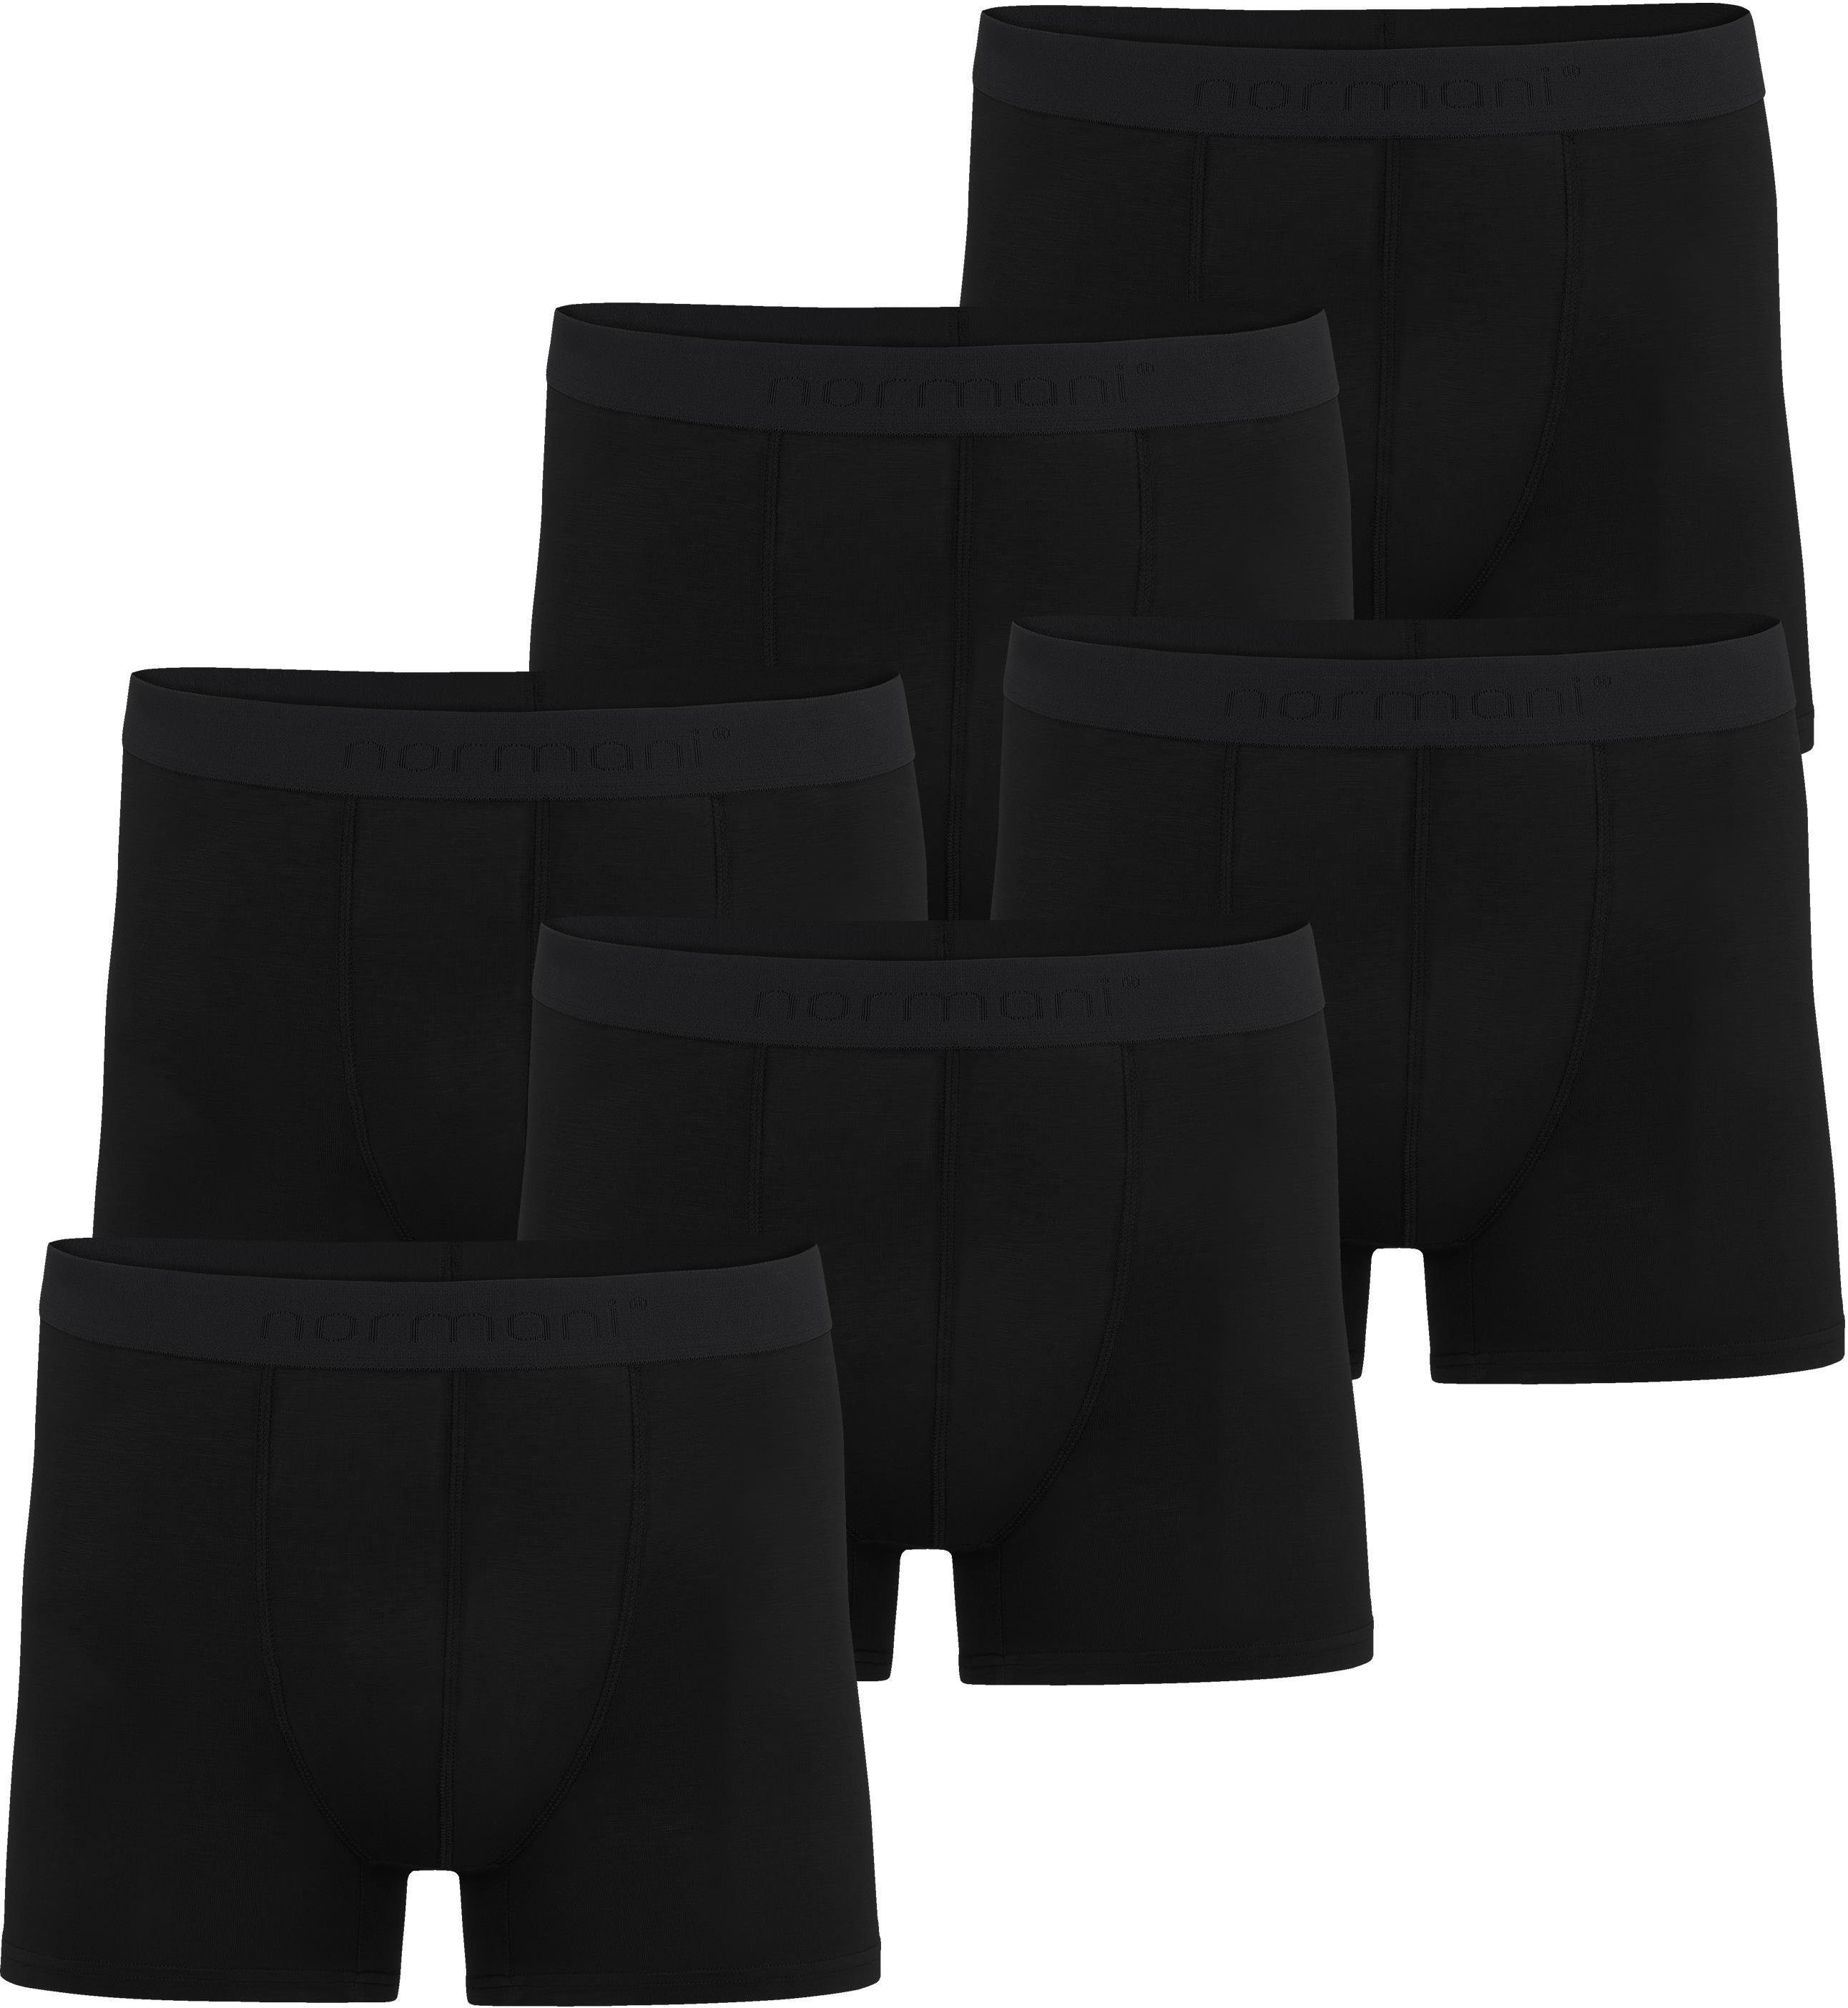 normani Boxershorts 6 Herren Boxershorts aus Bambus-Viskose Cubao  Unterhosen für Männer aus weicher Viskose